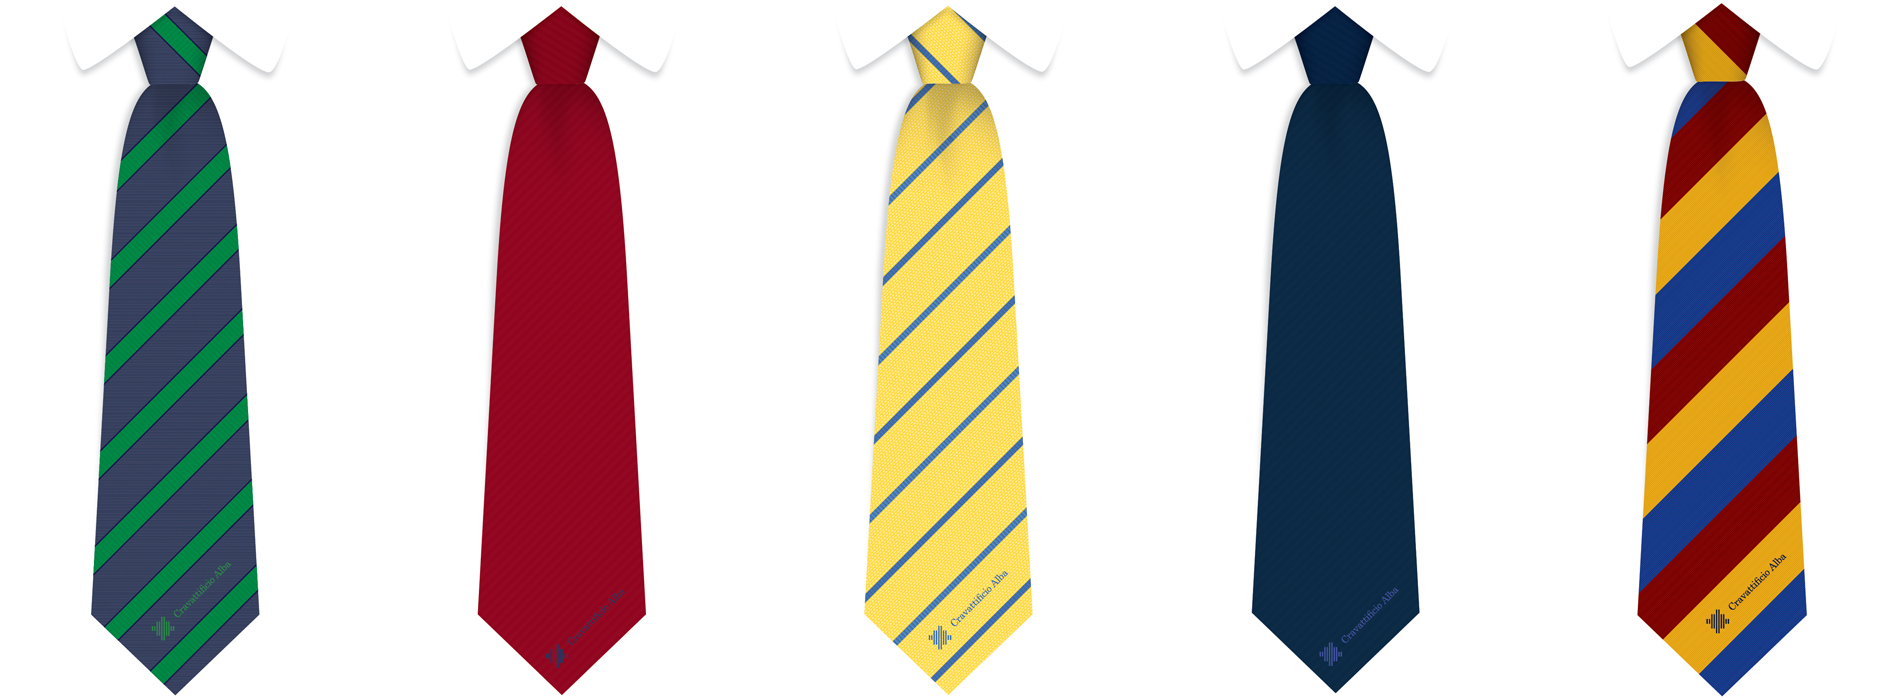 alba-cravatte-promozionali